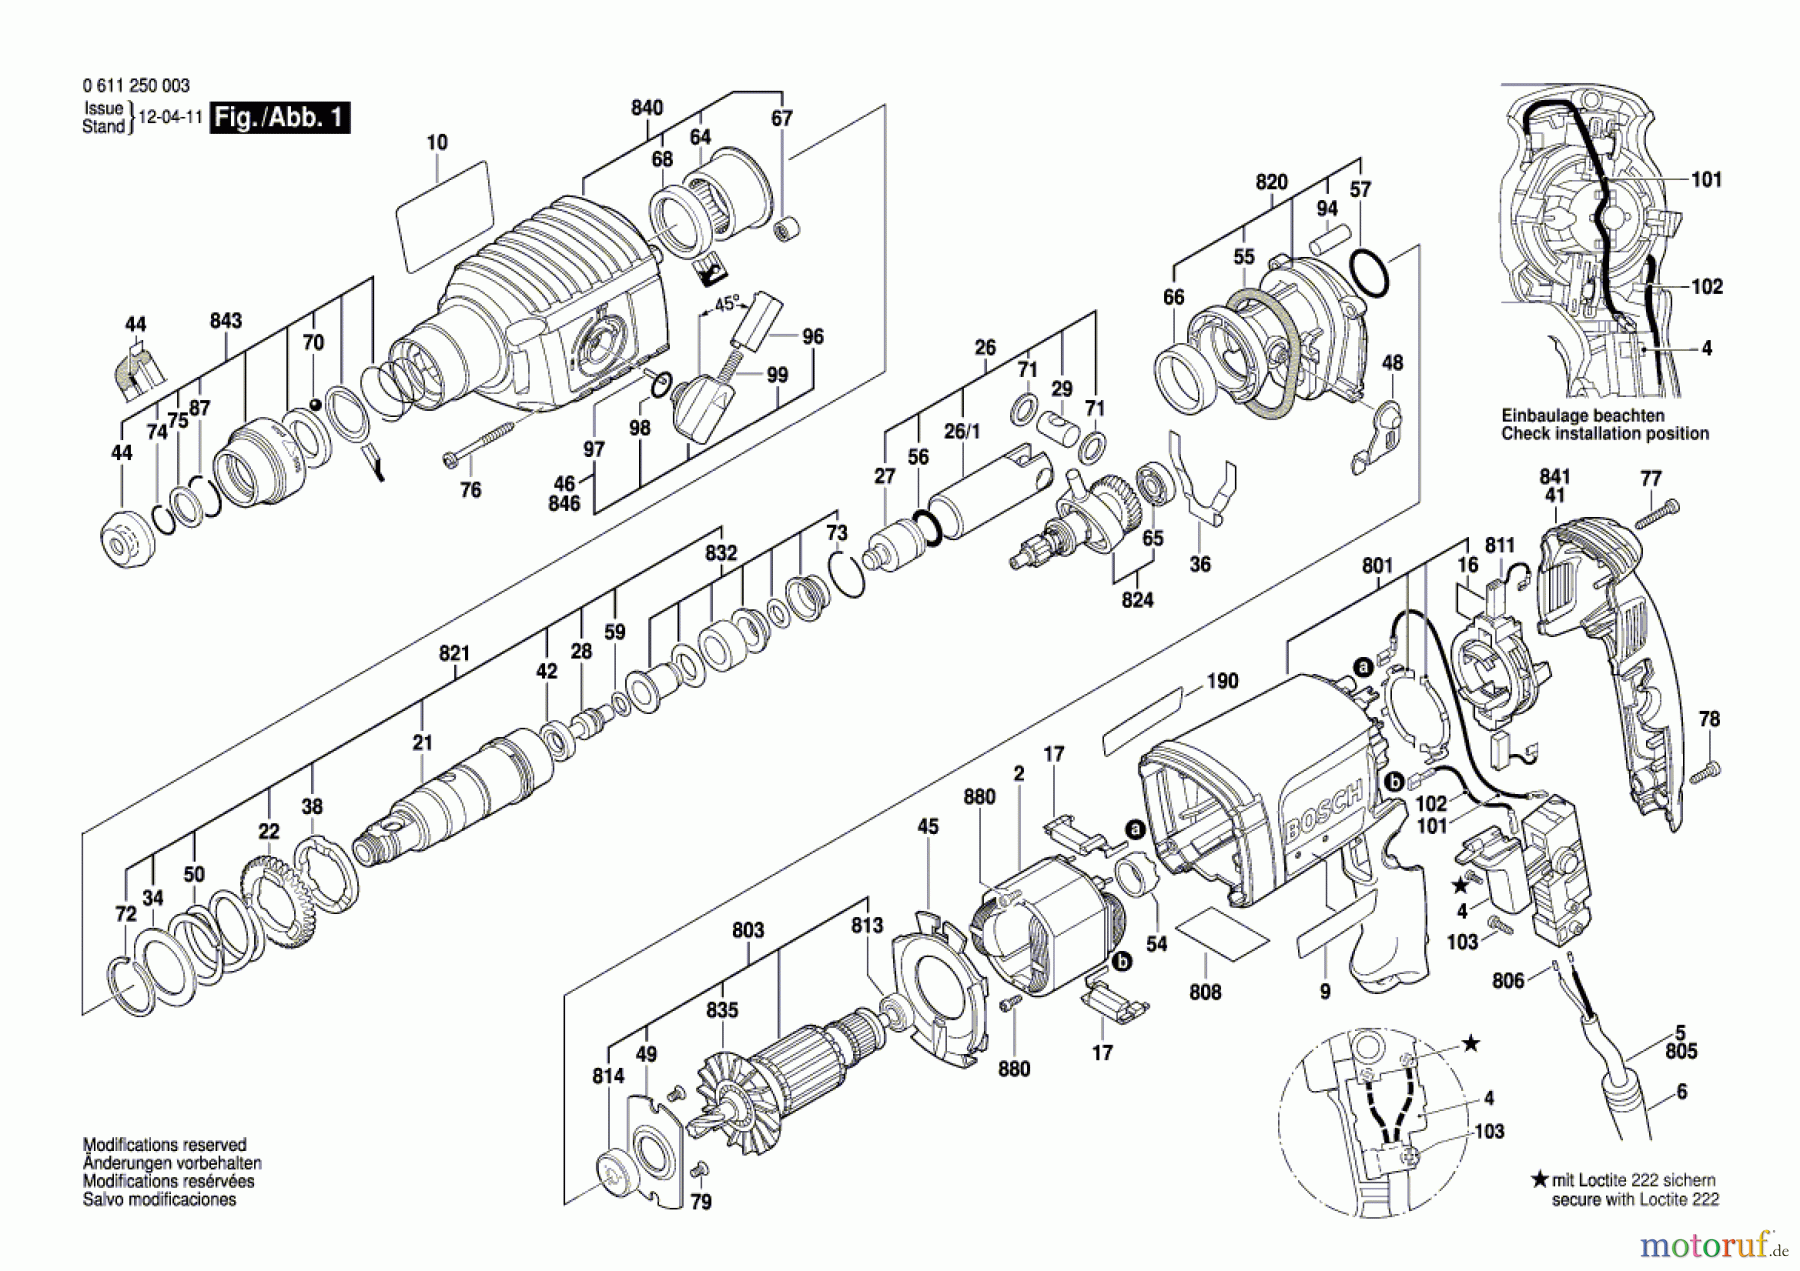  Bosch Werkzeug Bohrhammer GBH 2-22 S Seite 1